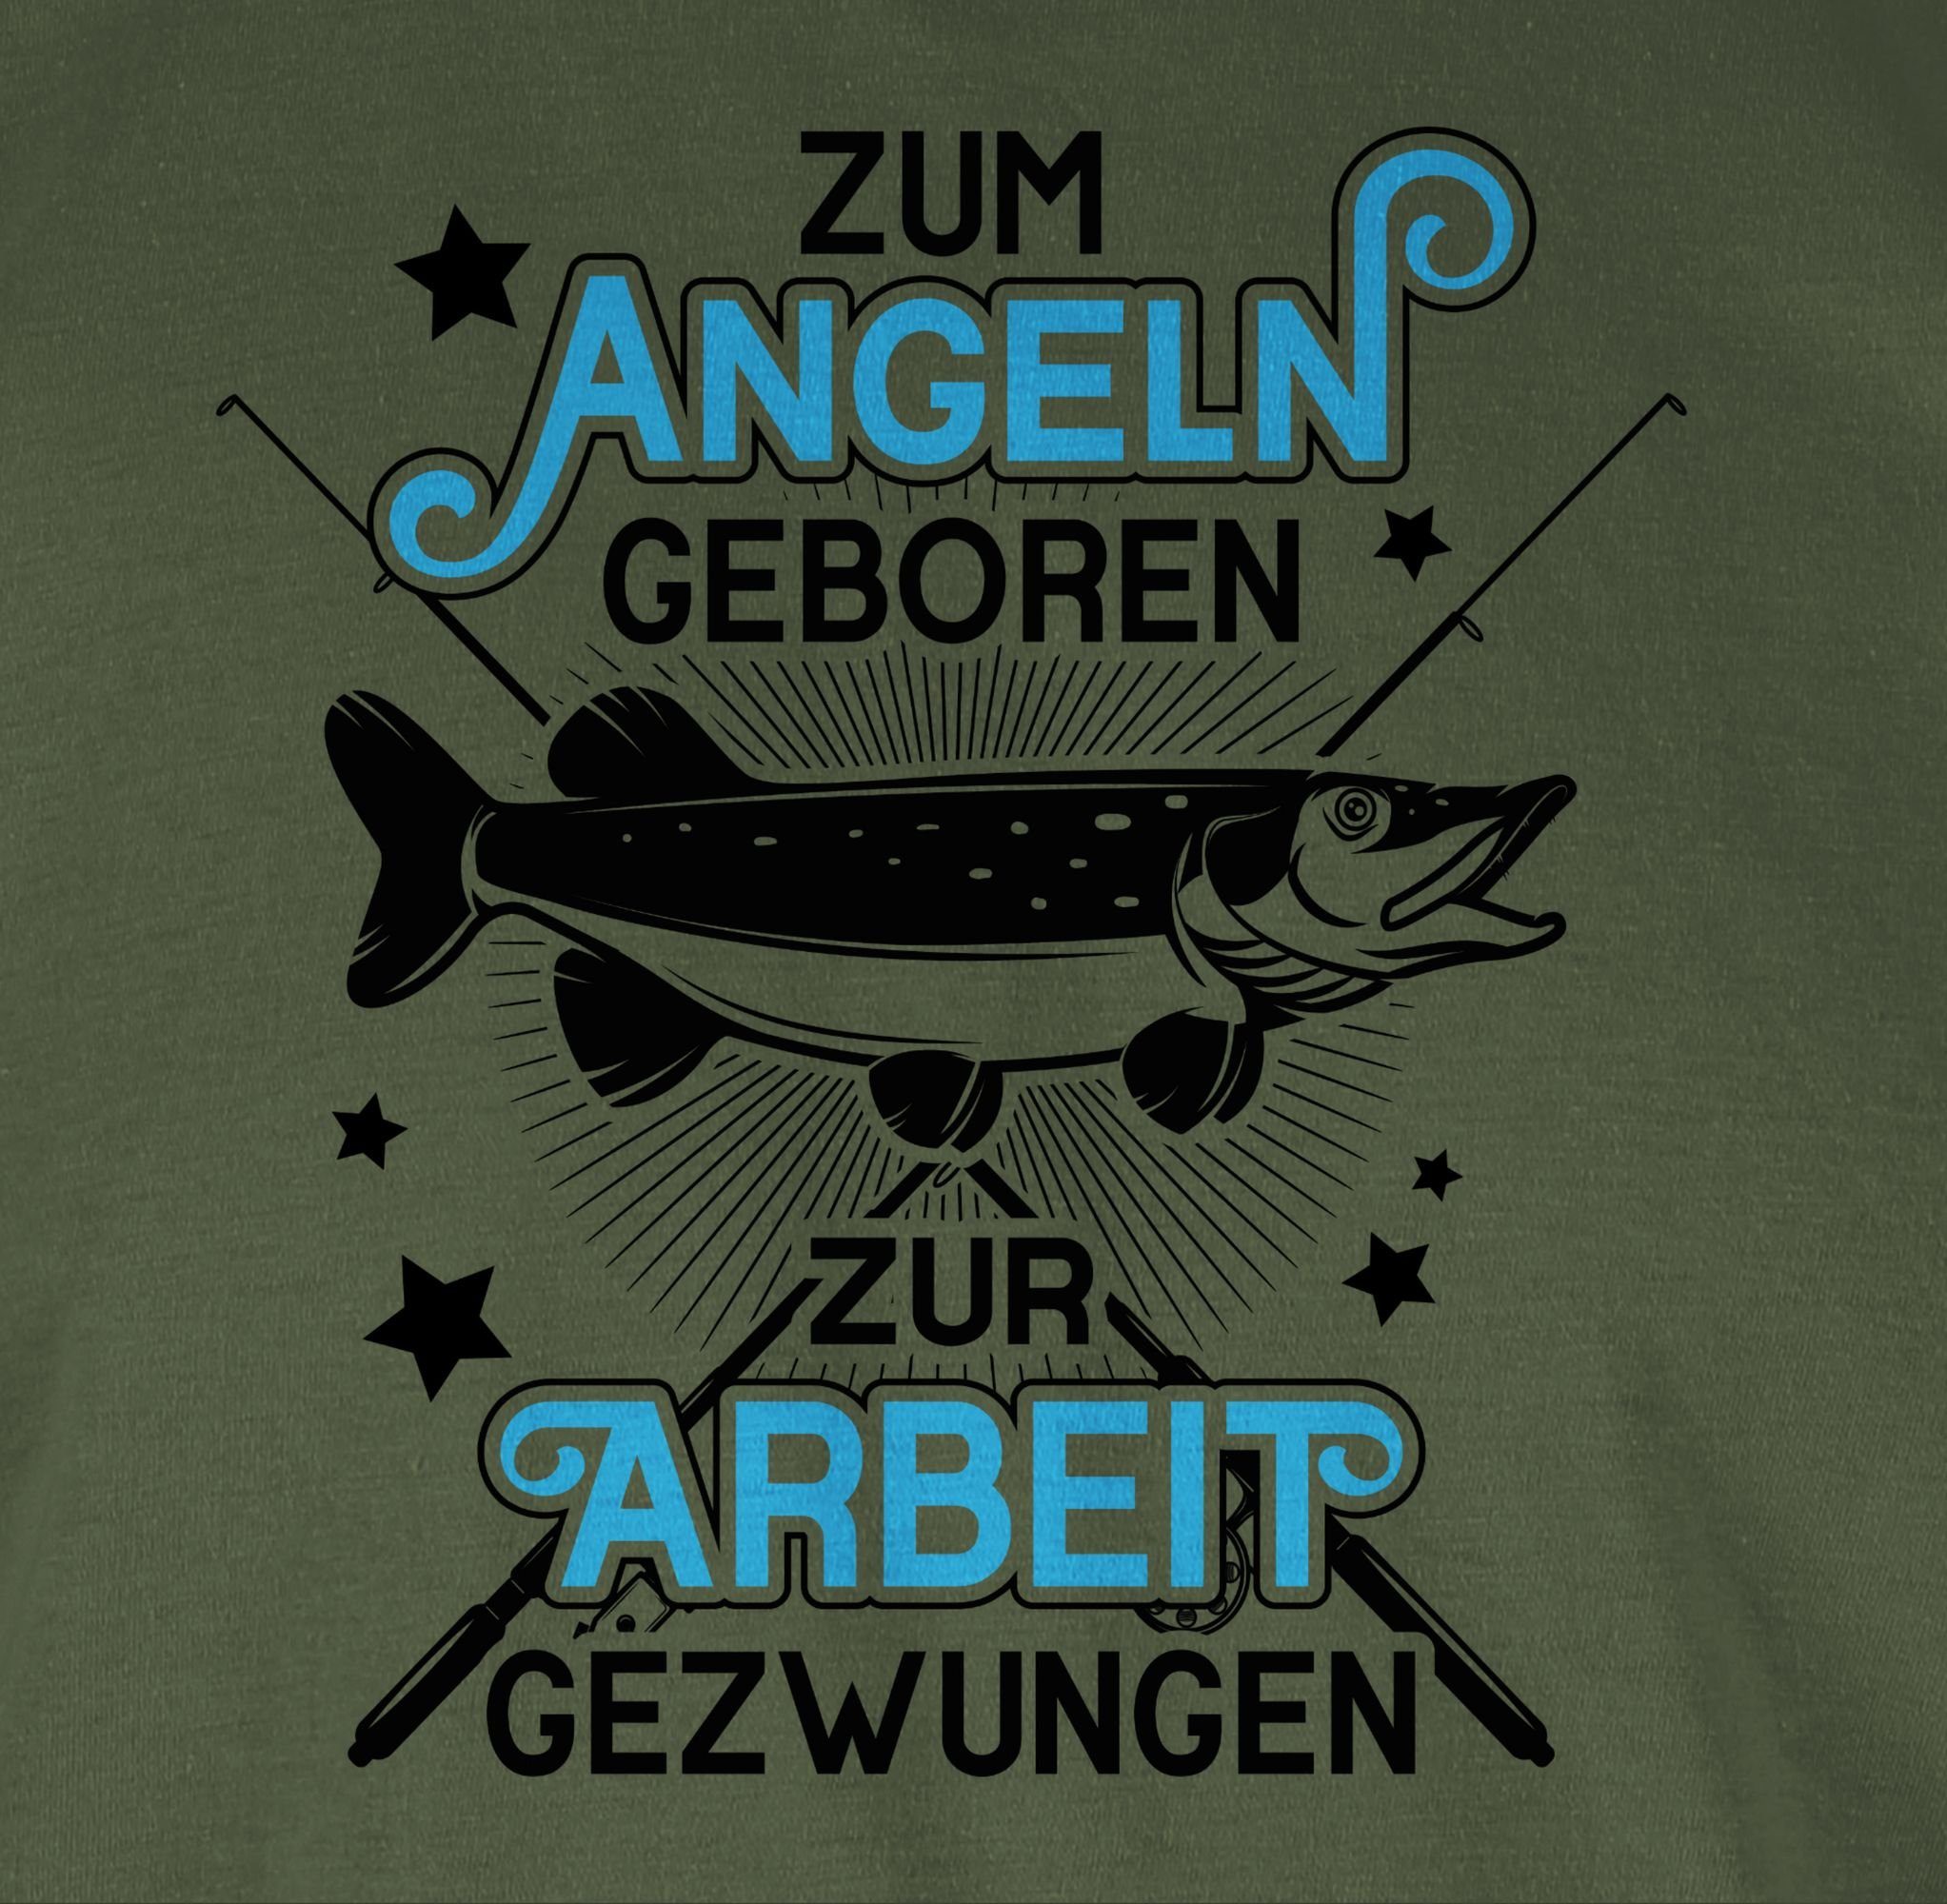 Arbeit Army gezwungen Geschenke Angler 2 - - Zum Zur Shirtracer geboren Angeln Grün schwarz T-Shirt